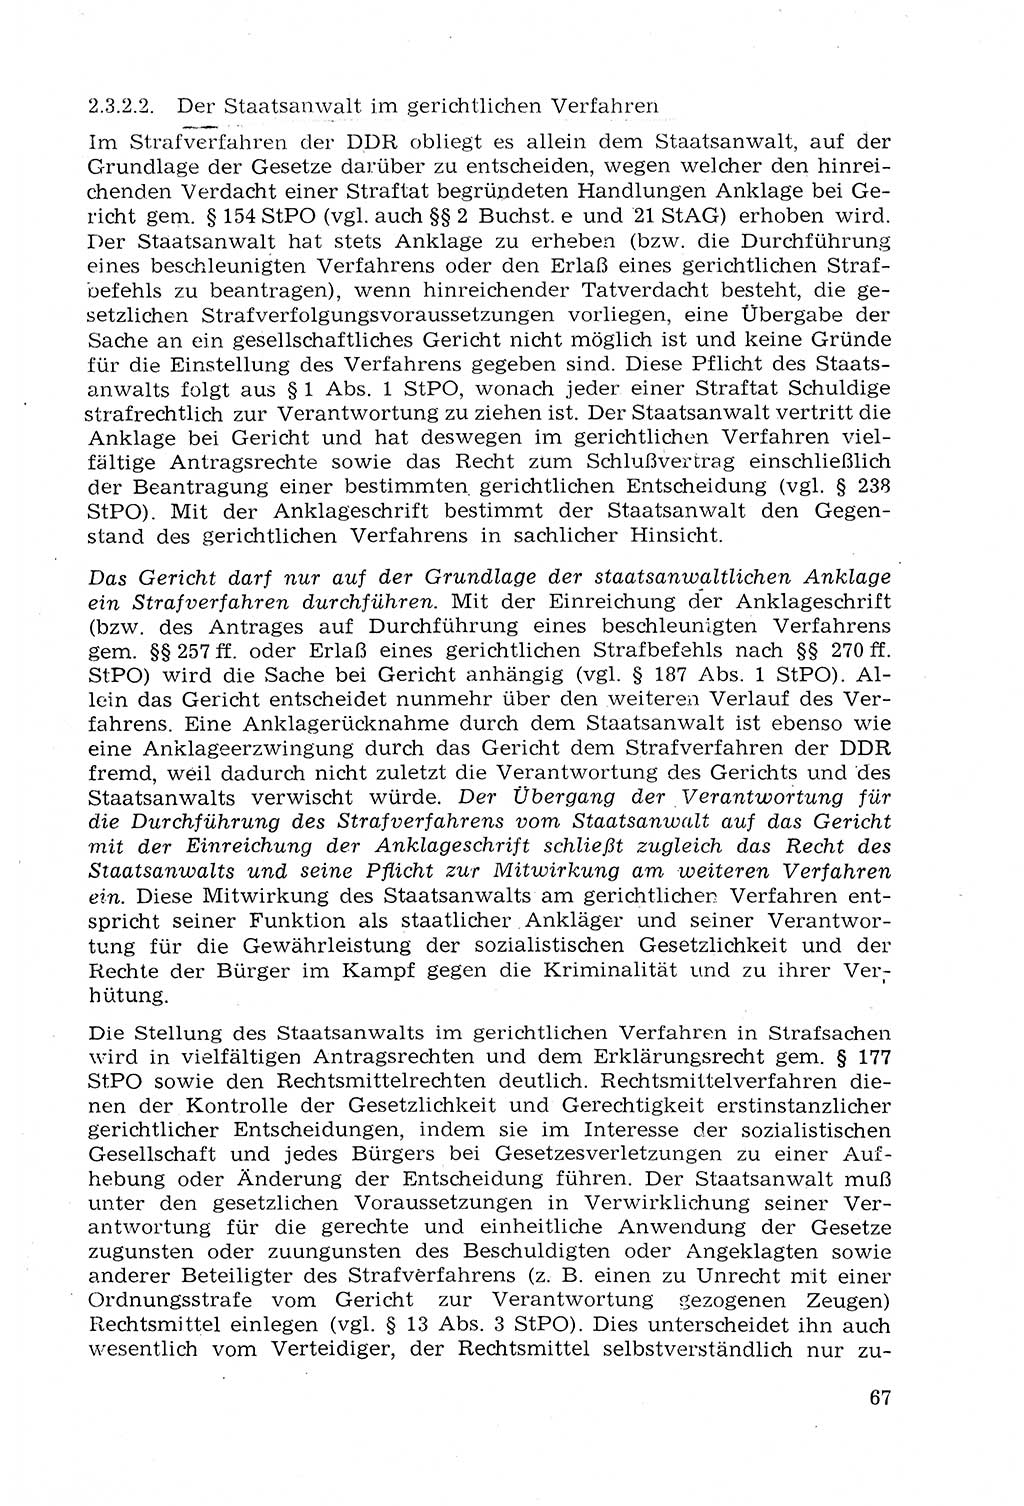 Strafprozeßrecht der DDR (Deutsche Demokratische Republik), Lehrmaterial 1969, Seite 67 (Strafprozeßr. DDR Lehrmat. 1969, S. 67)